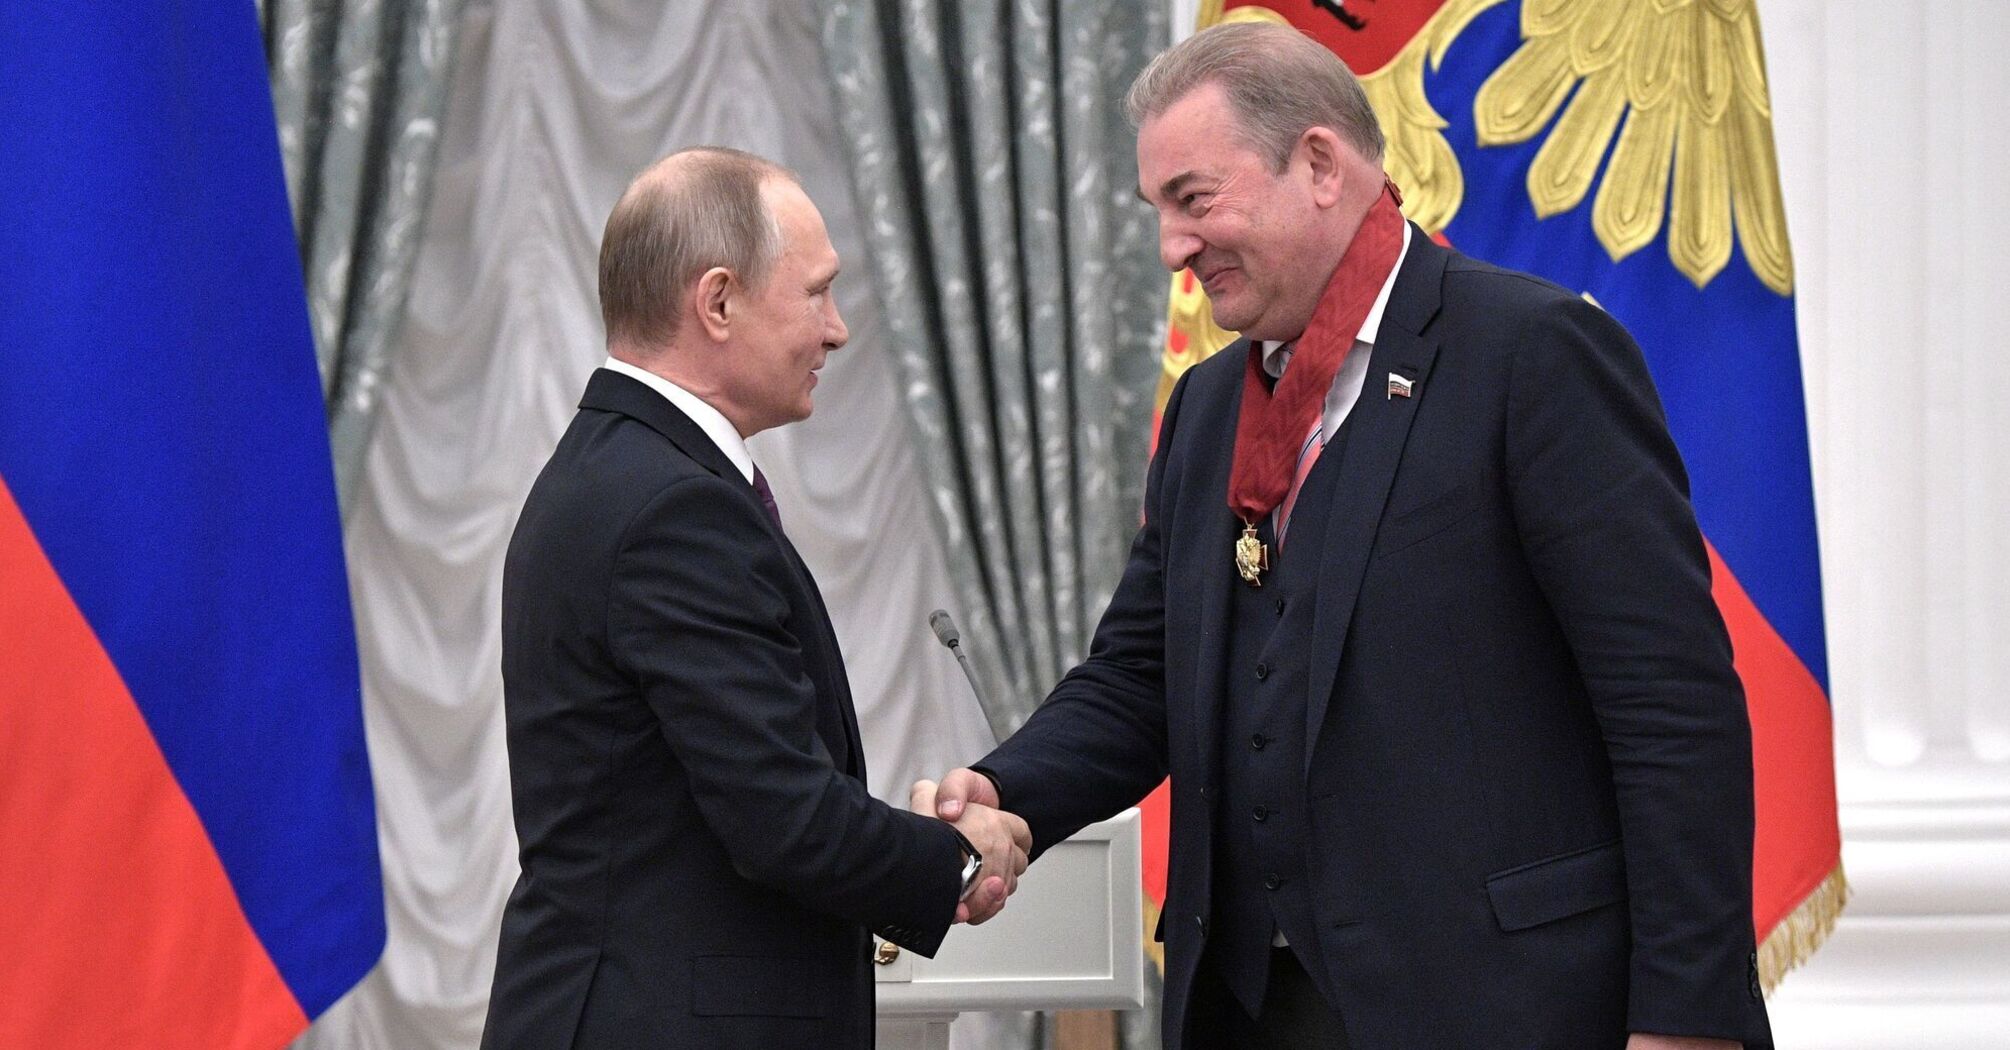 Tretyak and Putin